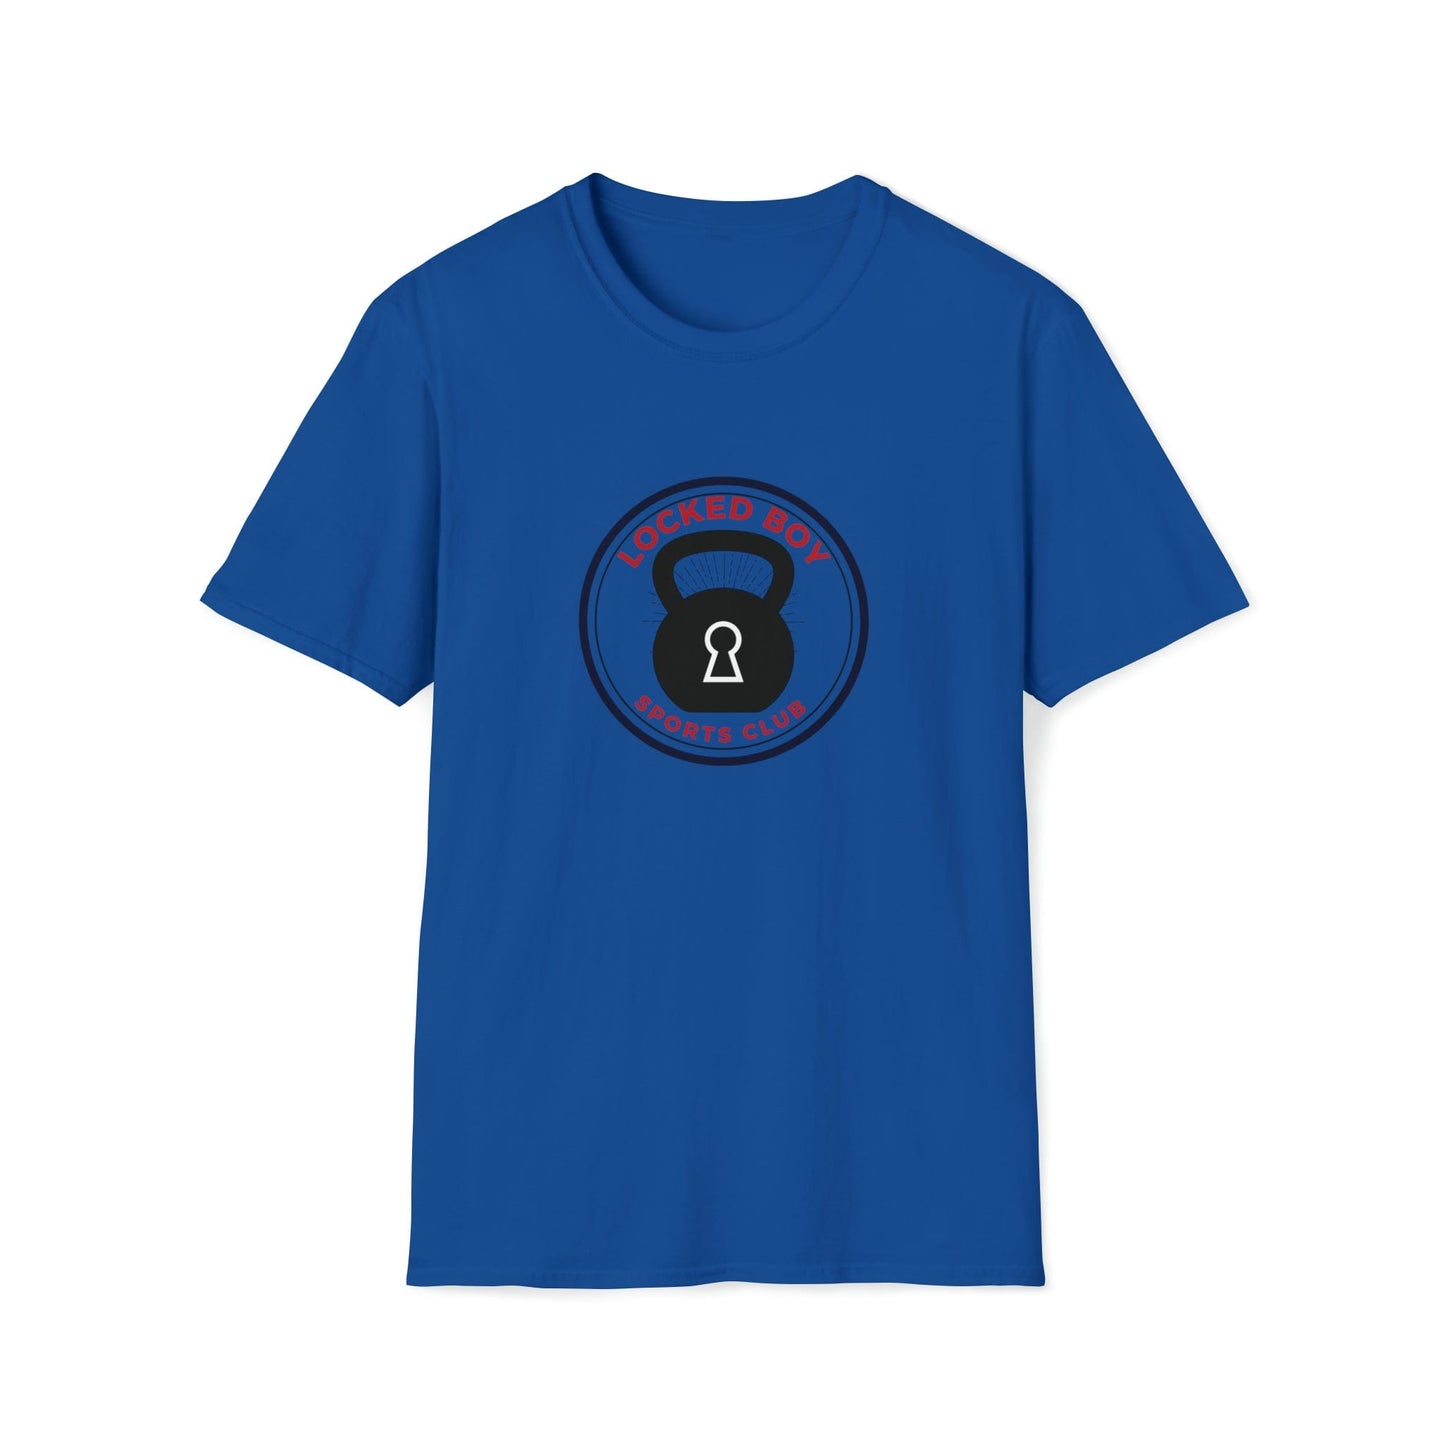 T-Shirt Royal / S LockedBoy Sports Club - Chastity Tshirt Kettlebell LEATHERDADDY BATOR